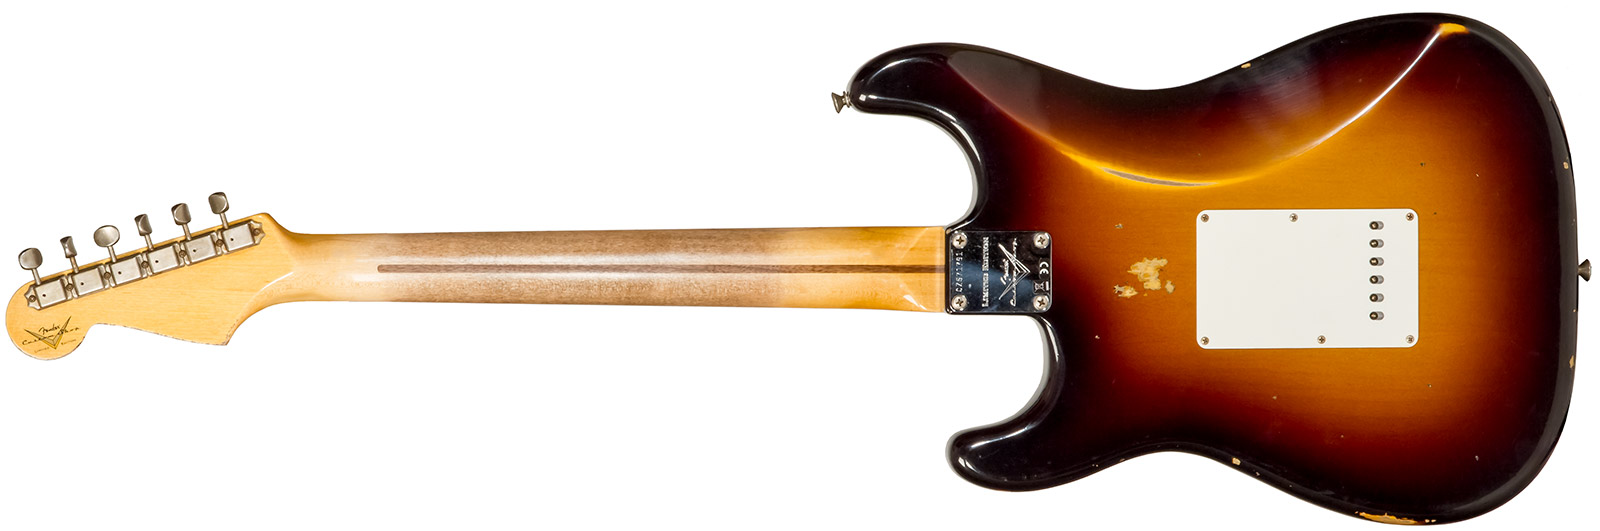 Fender Custom Shop Strat 1957 3s Trem Mn #cz571791 - Relic Wide Fade 2-color Sunburst - Elektrische gitaar in Str-vorm - Variation 1